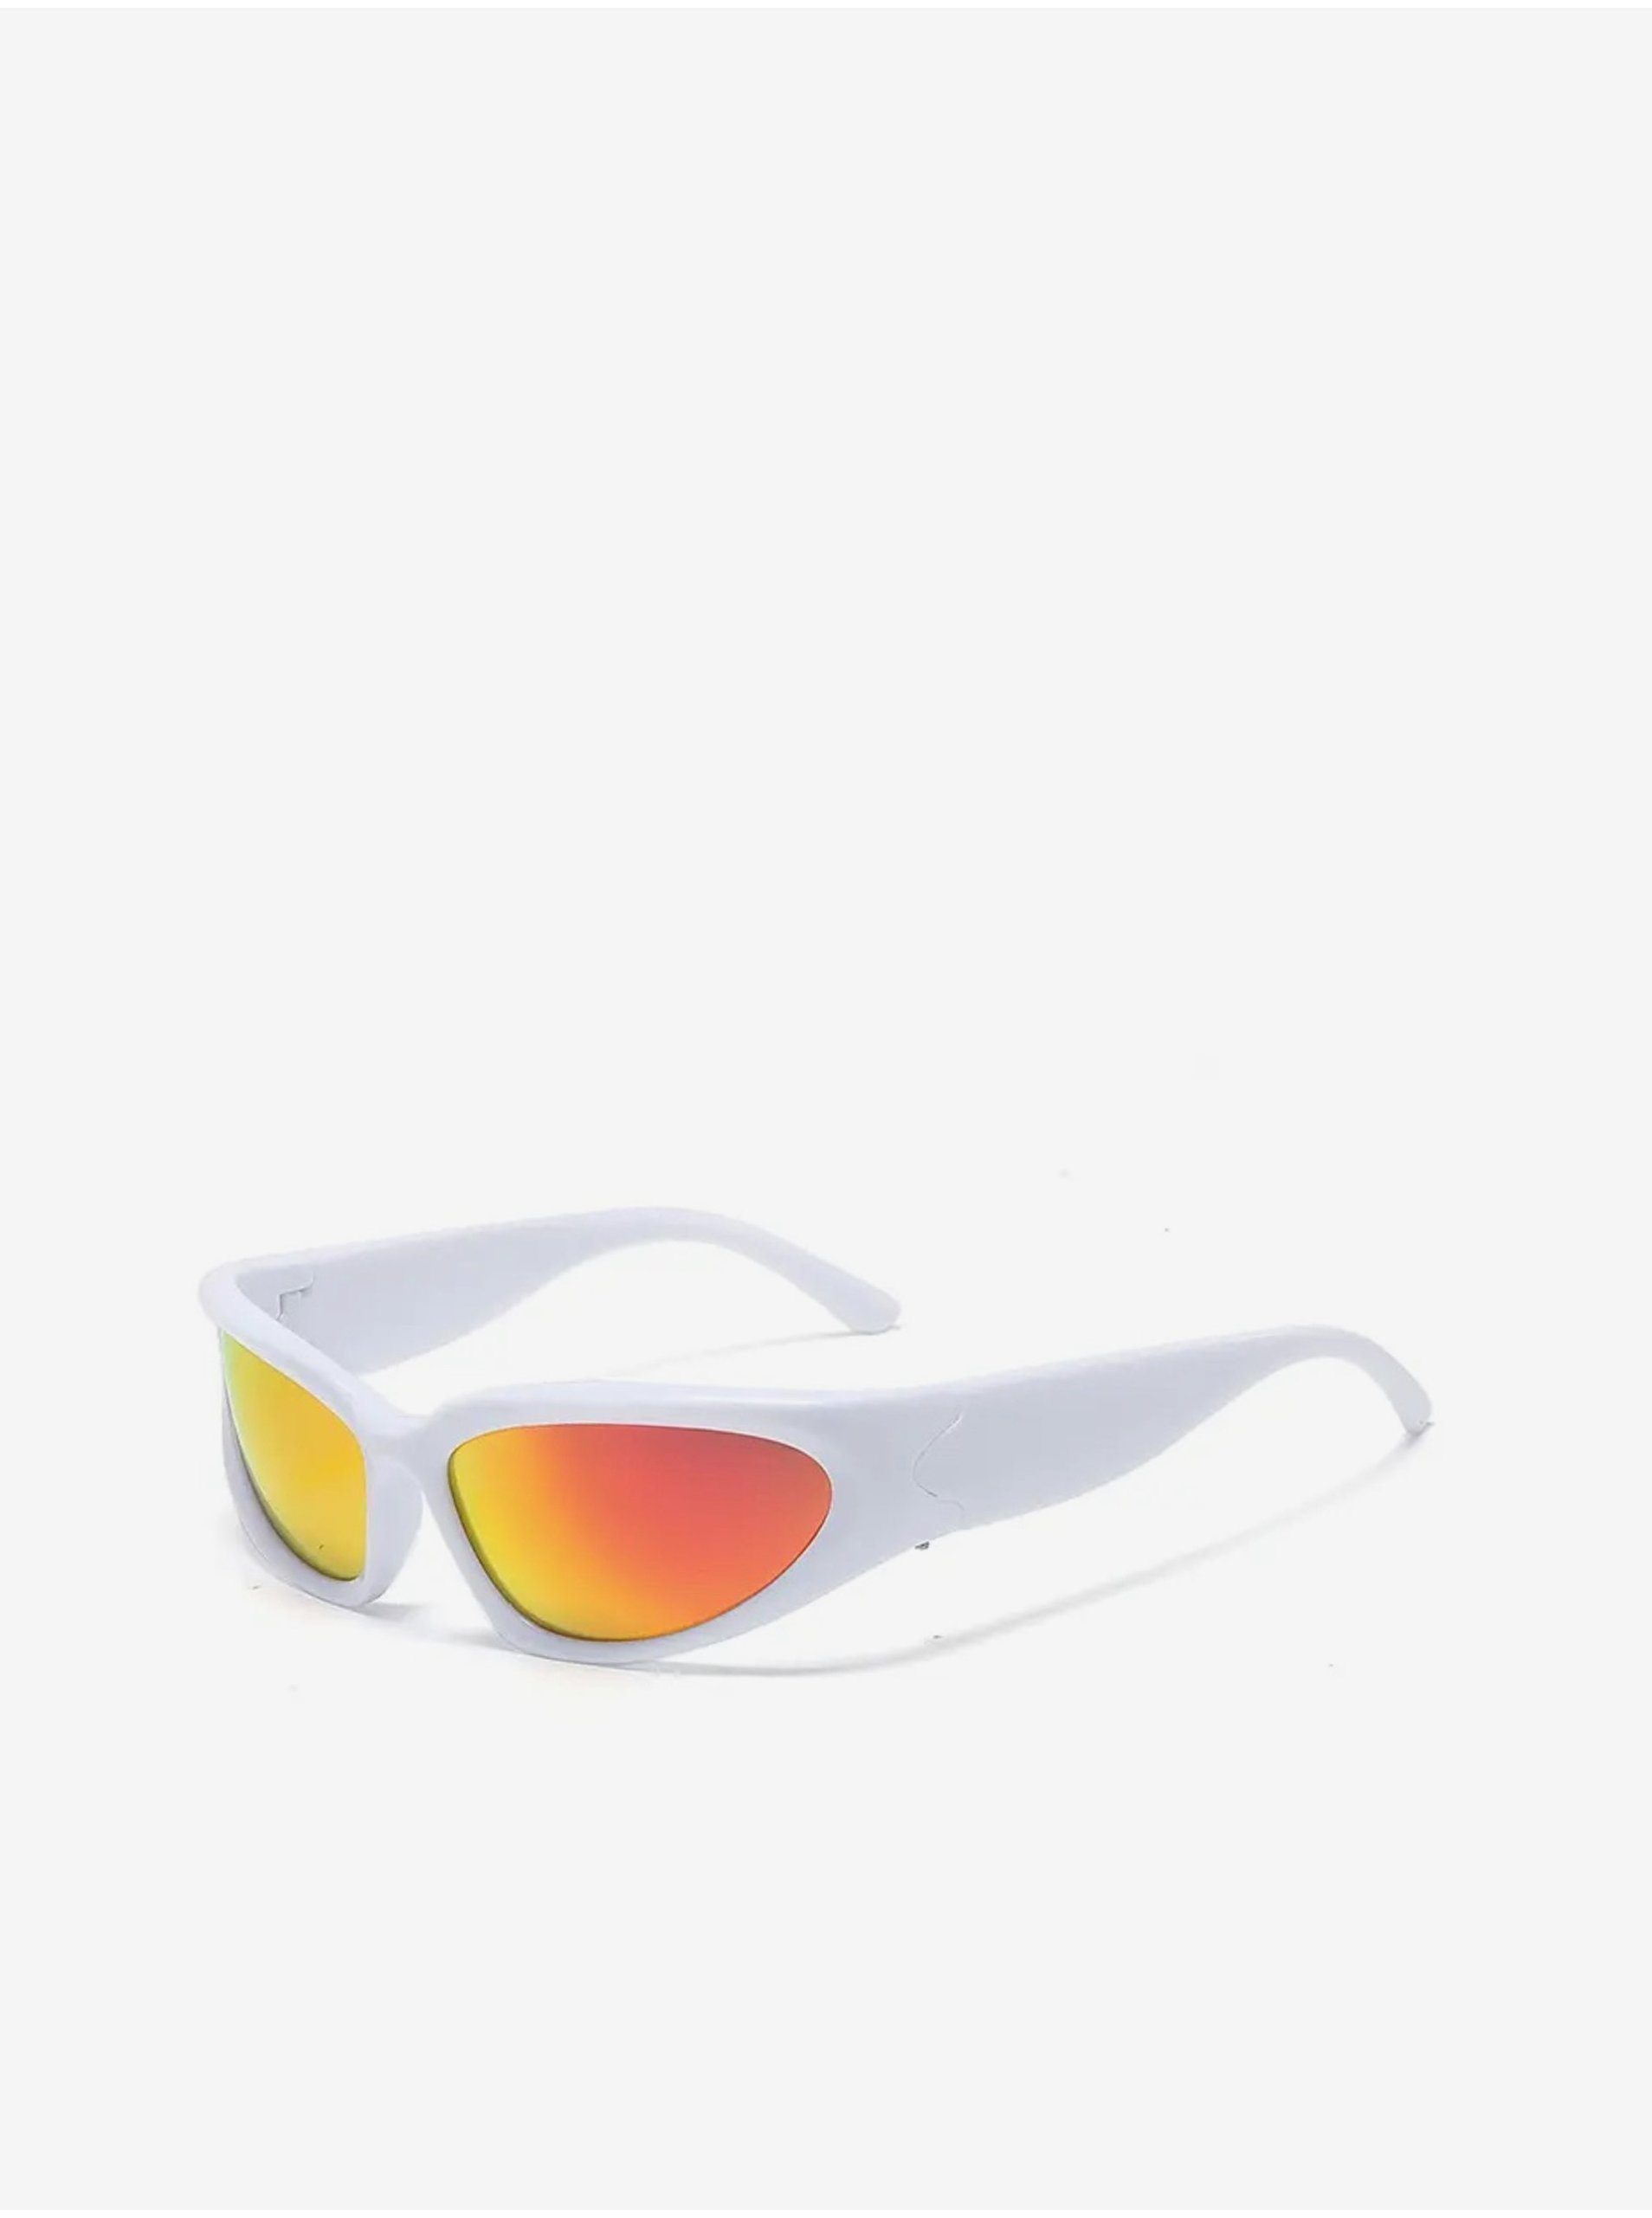 E-shop Bílé unisex sportovní sluneční brýle VeyRey Steampunk Gezrel